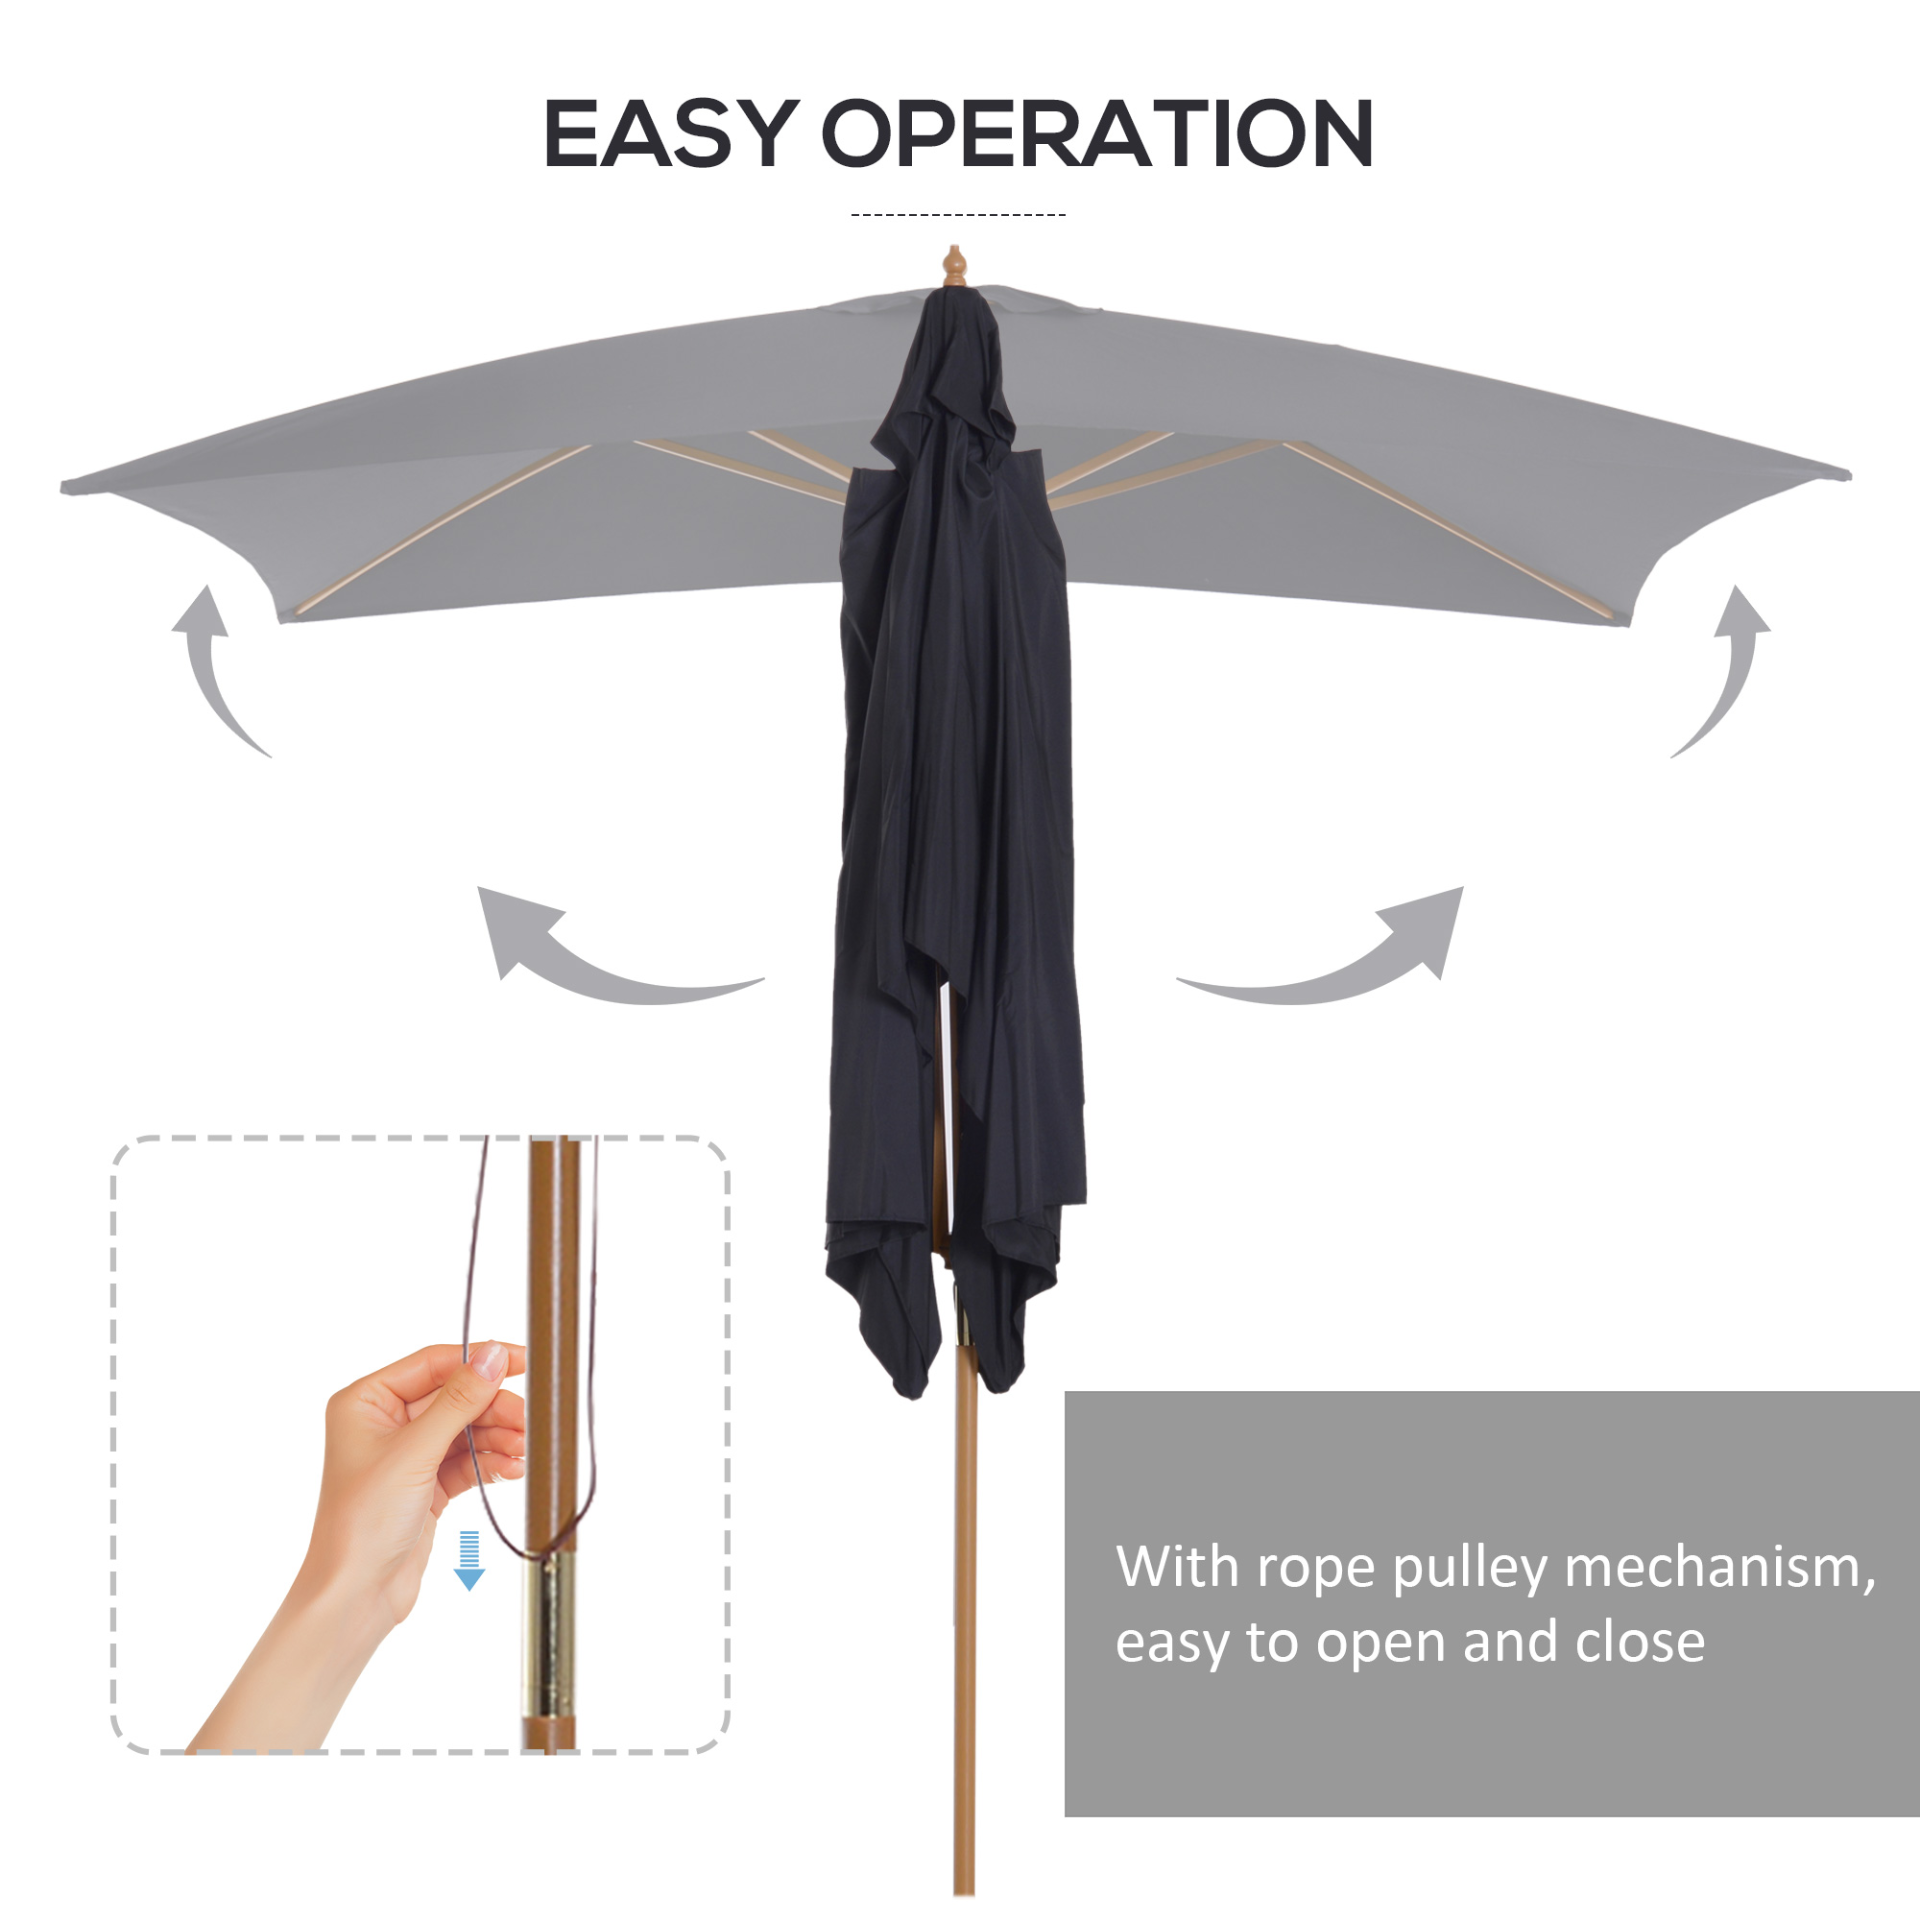 Outsunny 2 x 3m Wooden Parasol Garden Umbrellas Sun Shade Patio Outdoor Umbrella Canopy Black